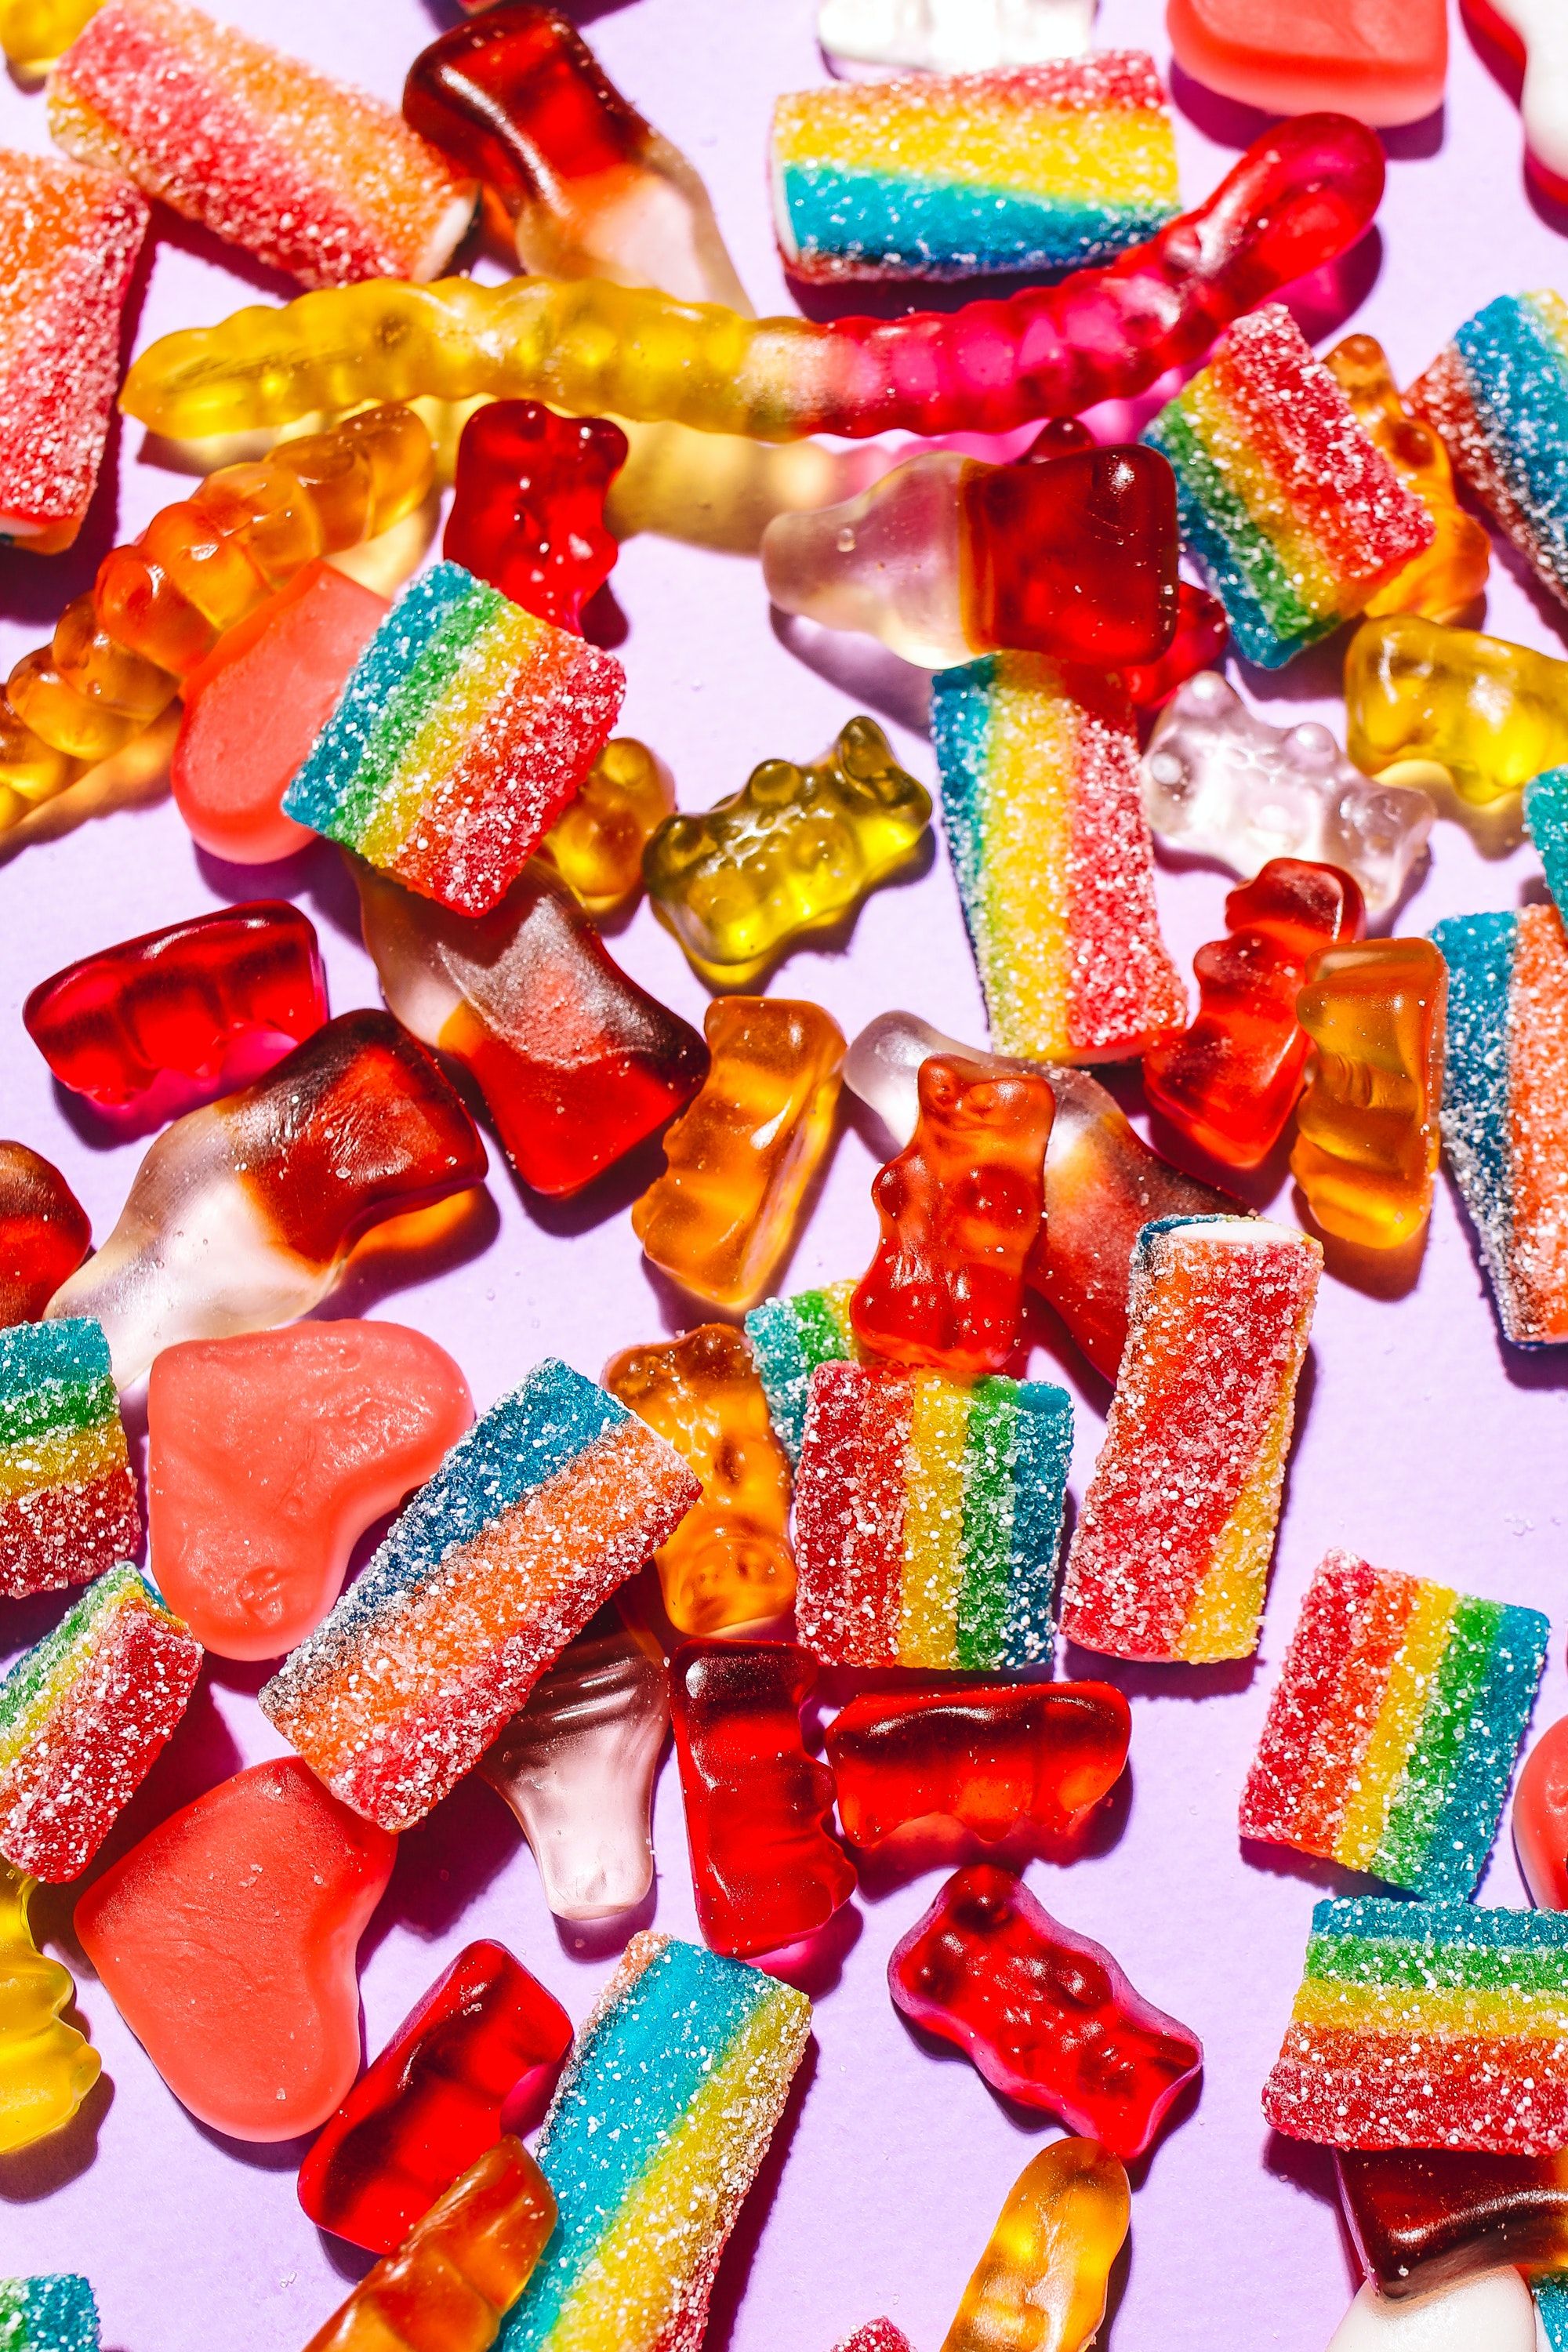  Süßigkeiten Hintergrundbild 2000x3000. Kostenloses Foto zum Thema: bunt, diabetes, gummiartig, gummibärchen, gummies, gummiwürmer, halloween süßigkeiten, köstlich, nahansicht, süßes oder saures, süßigkeiten, zucker